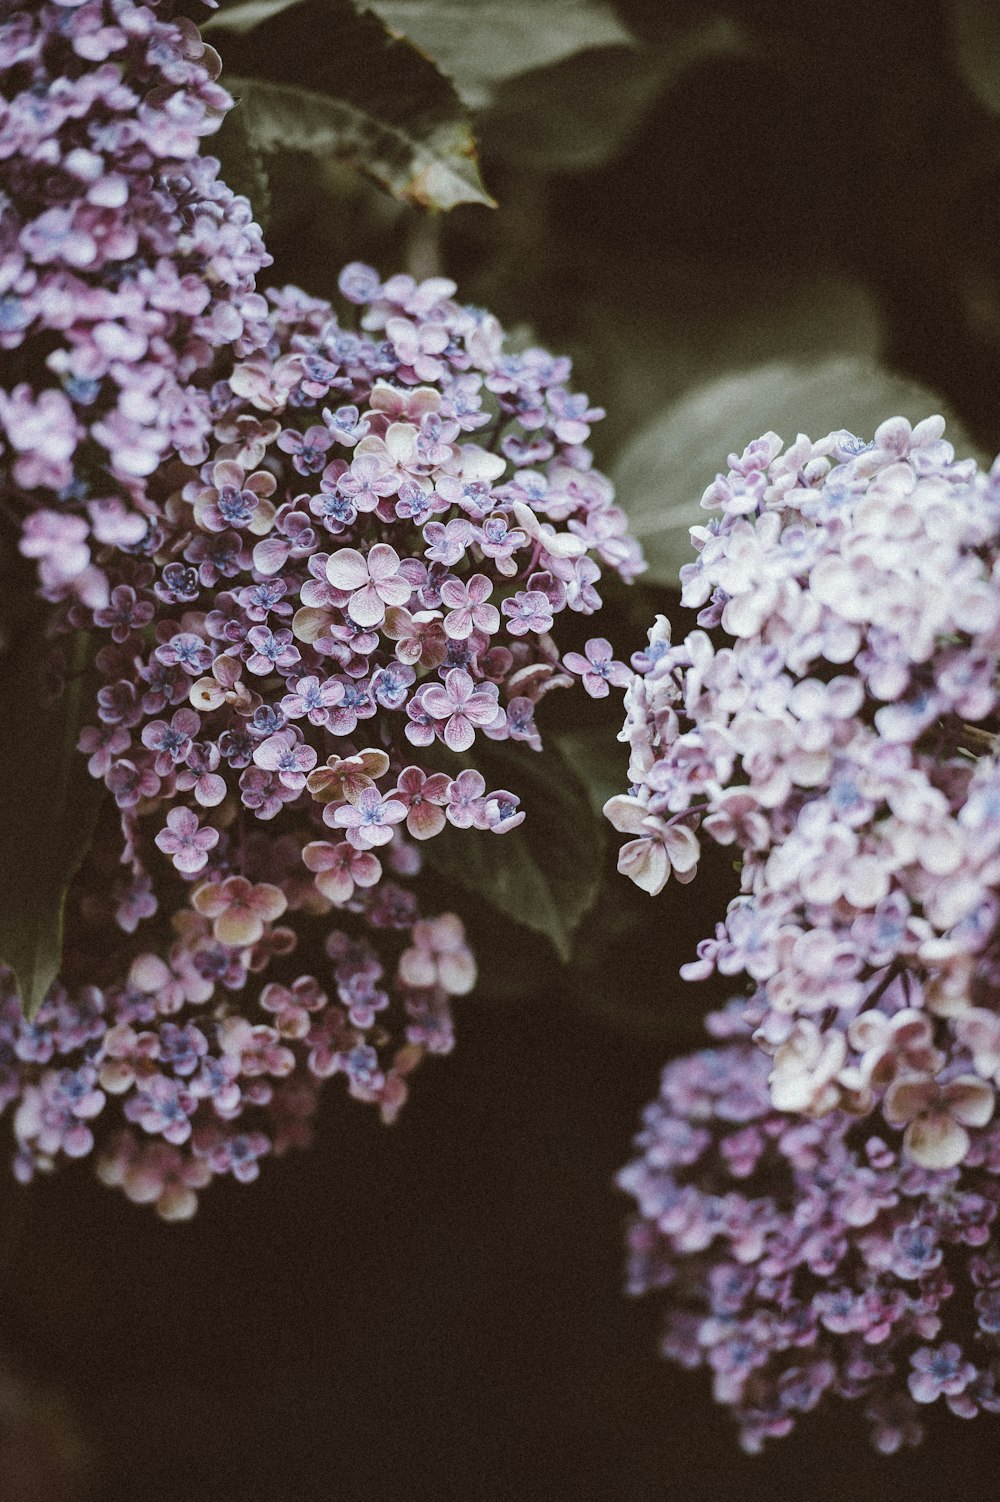 foto ravvicinata di fiore dai petali viola